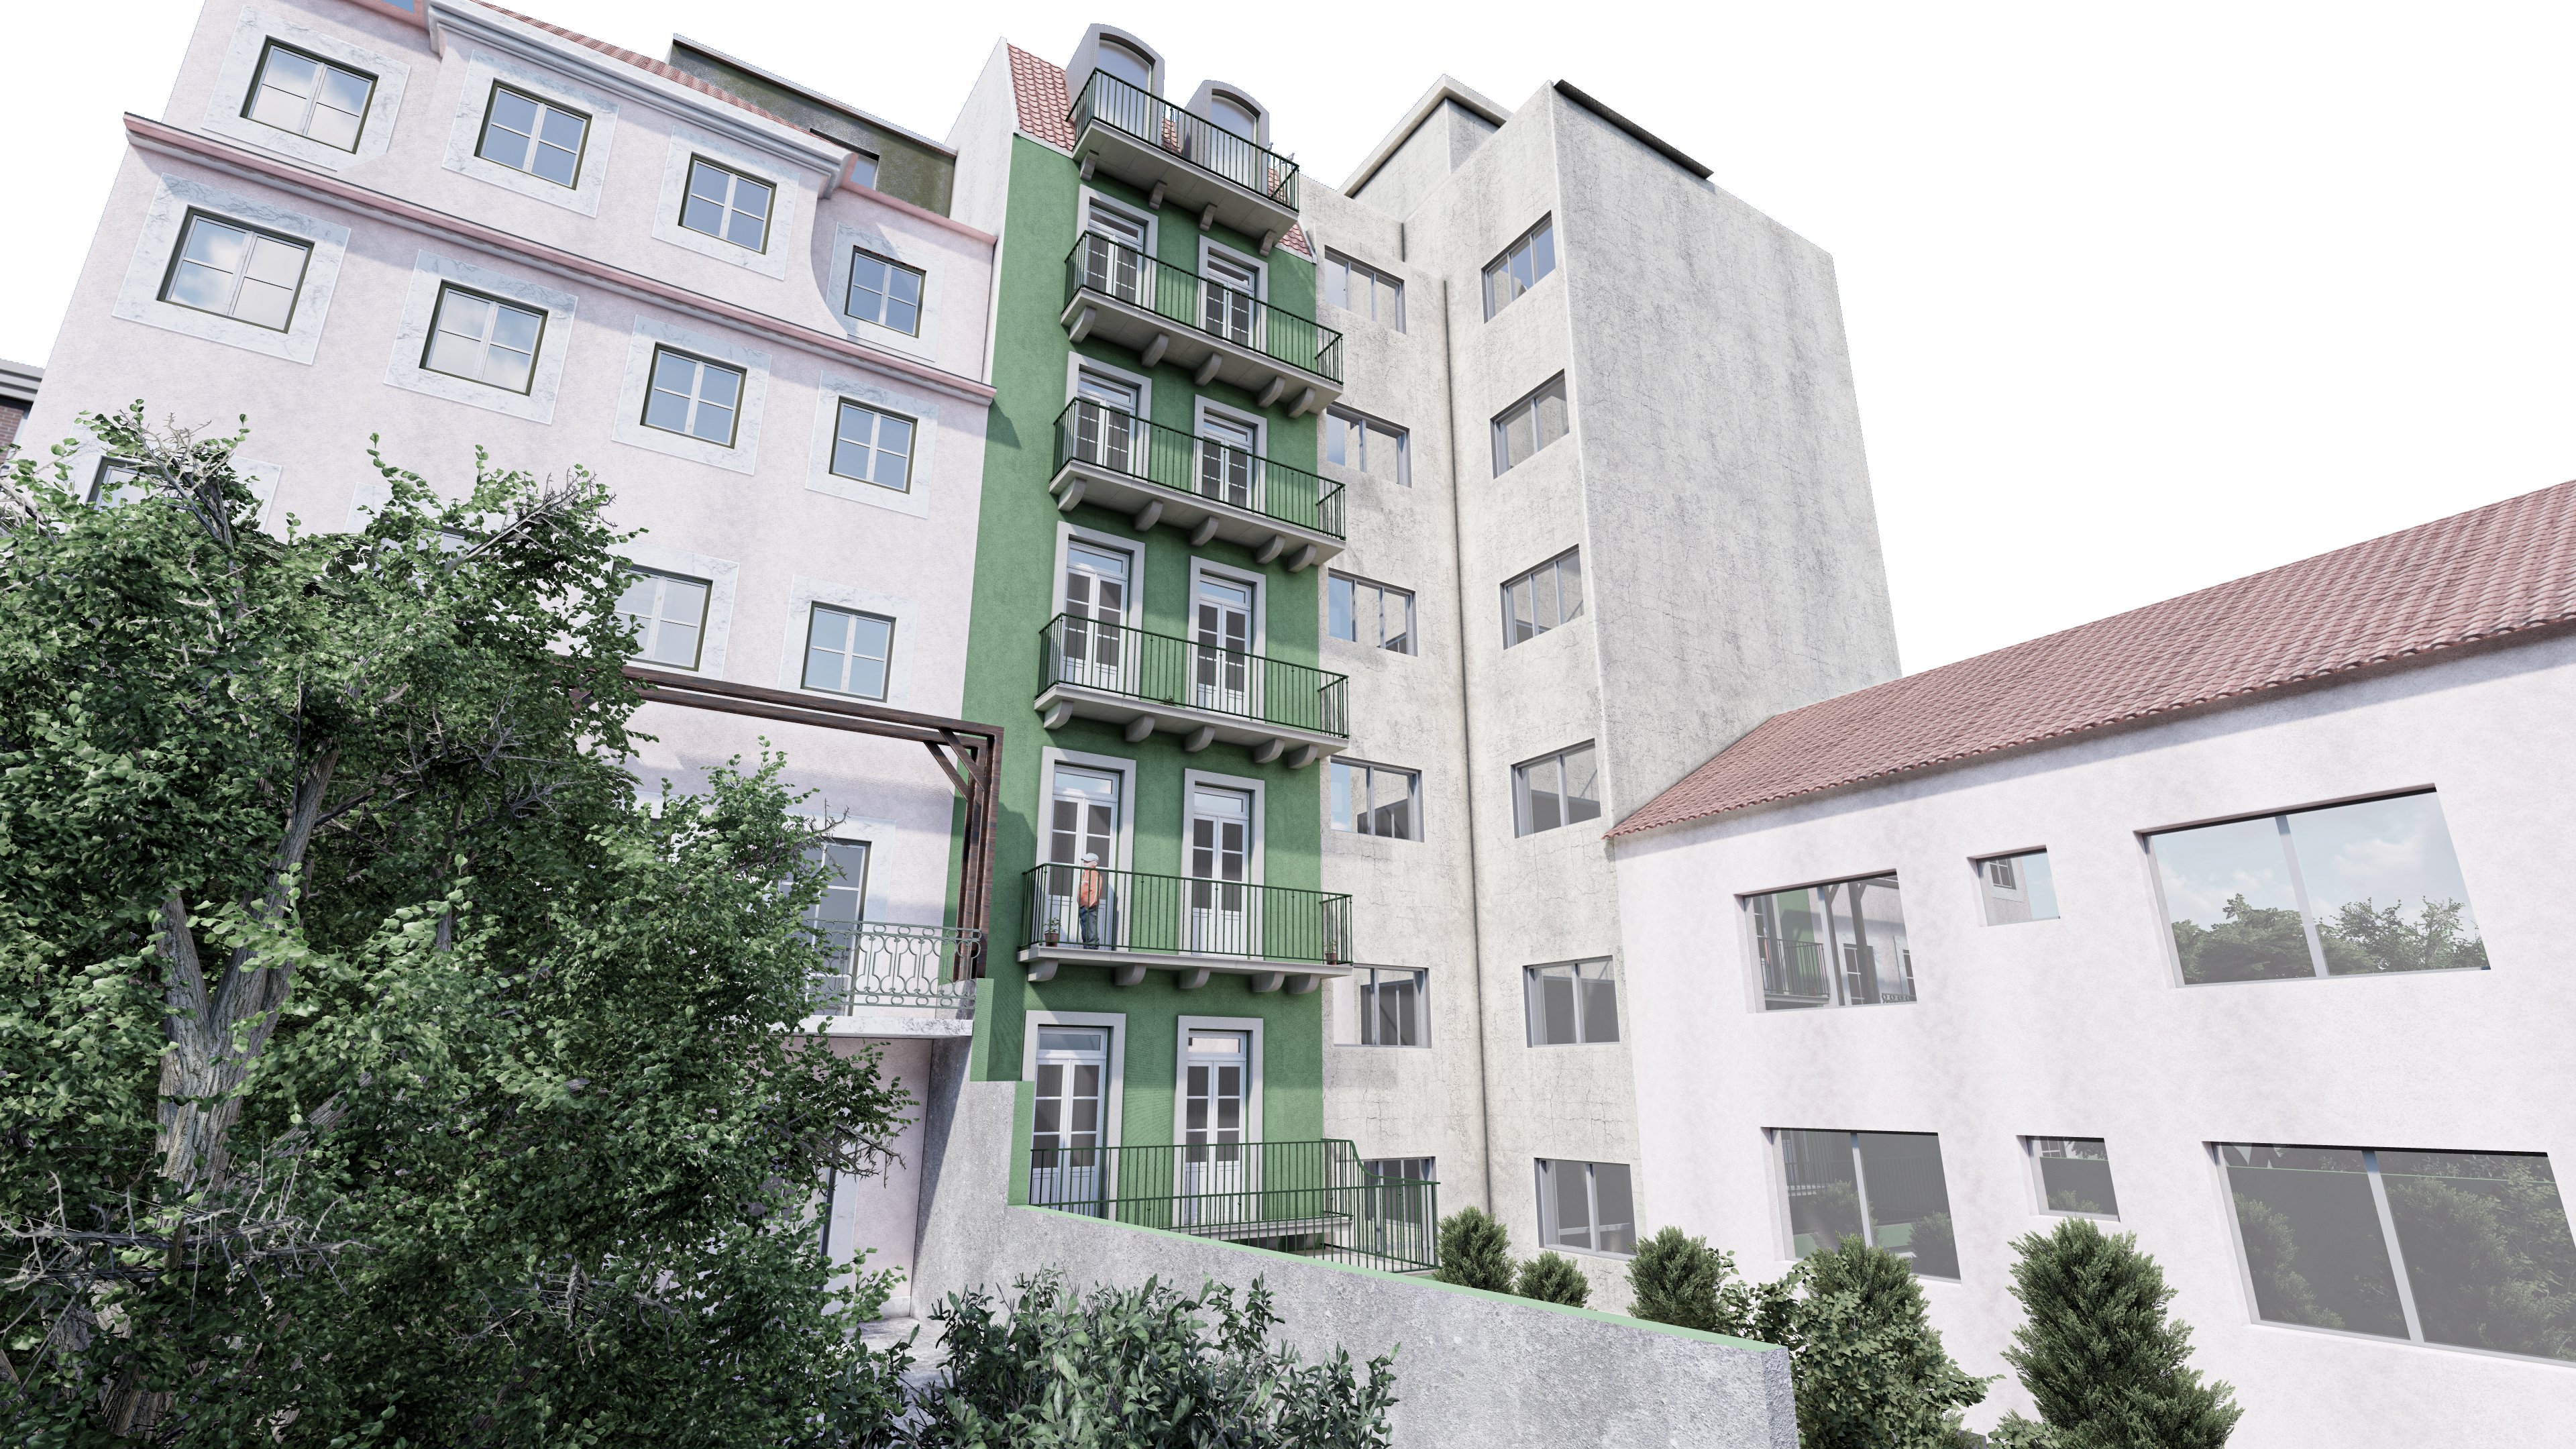 Foto 3 RealFolio Estate promove em exclusivo dois novos empreendimentos em Lisboa